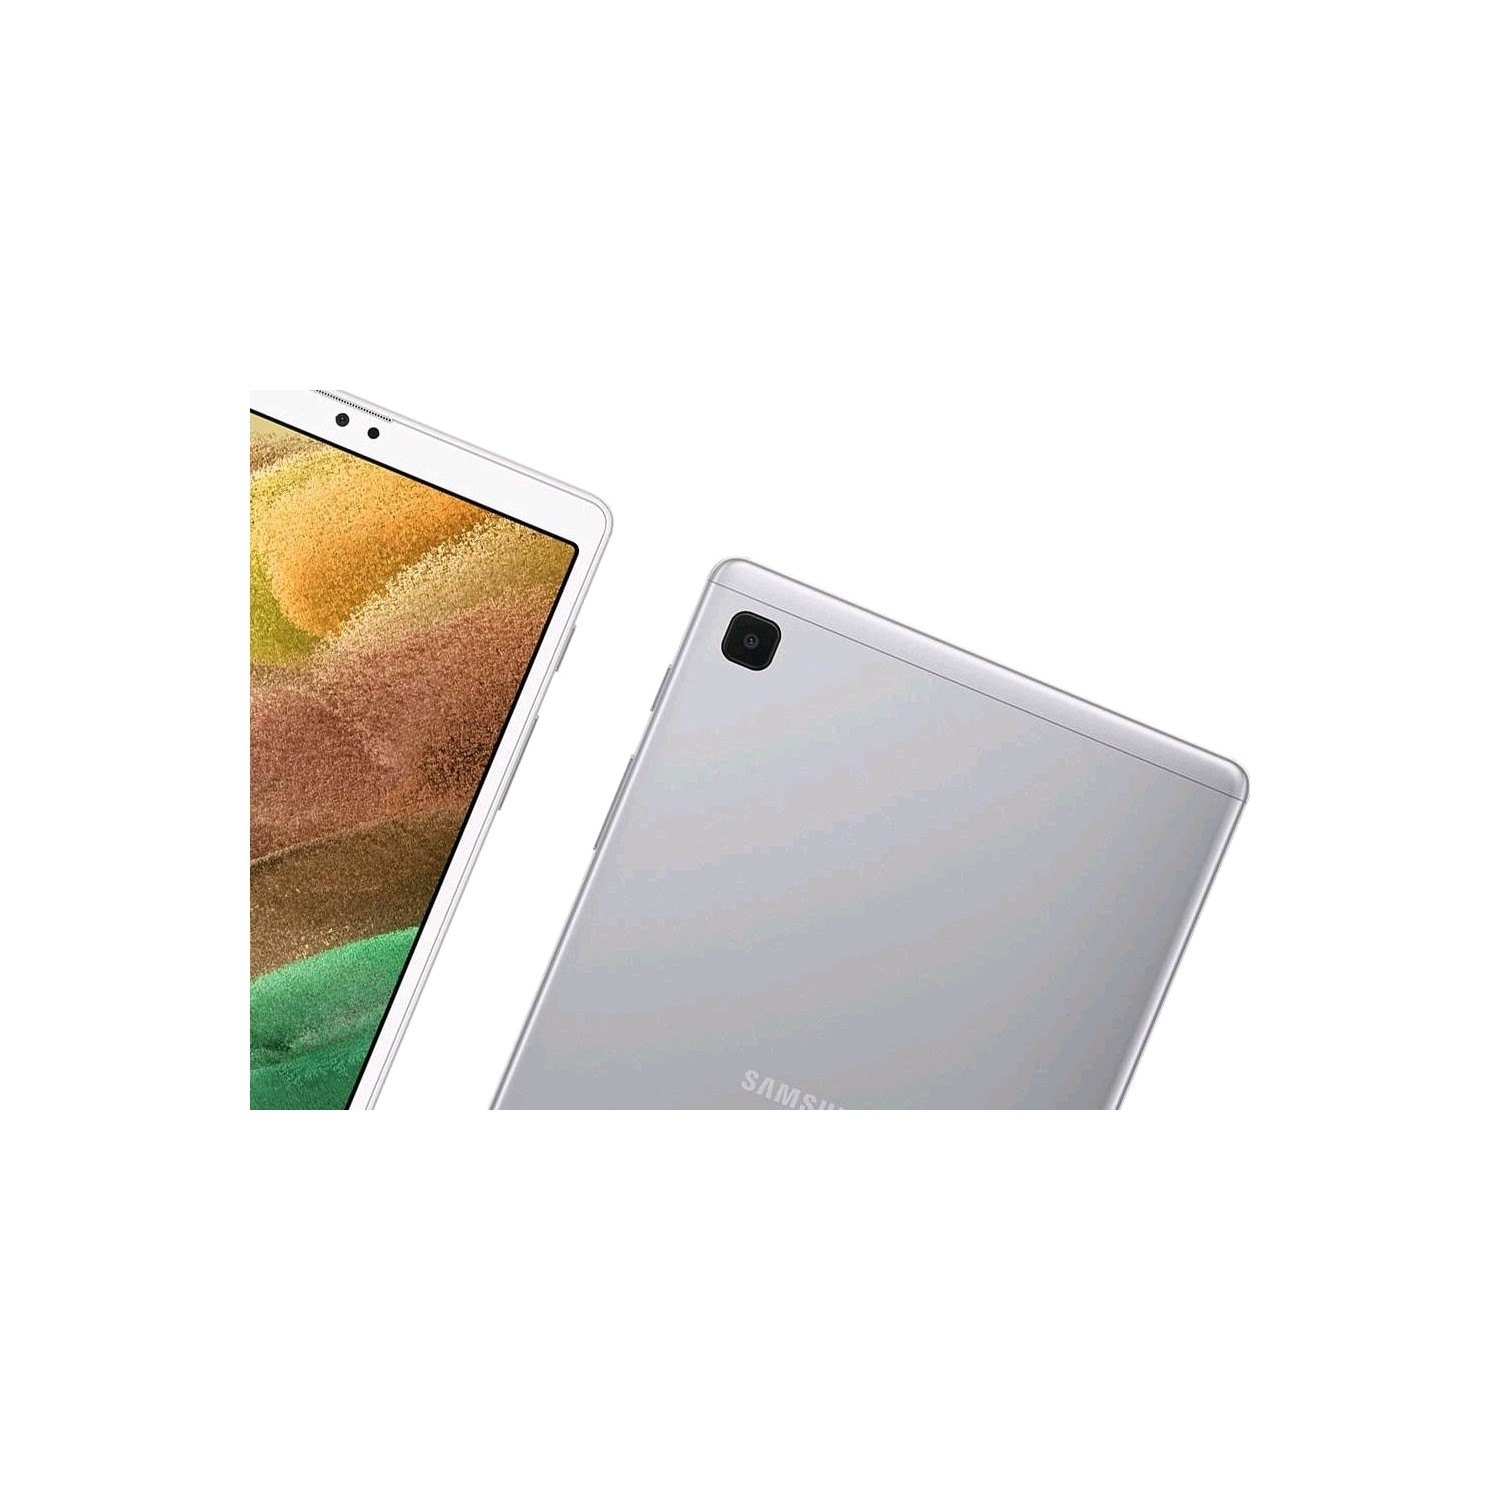 Galaxy Tab A7 Lite 8.7, 32GB, Grey (Wi-Fi)